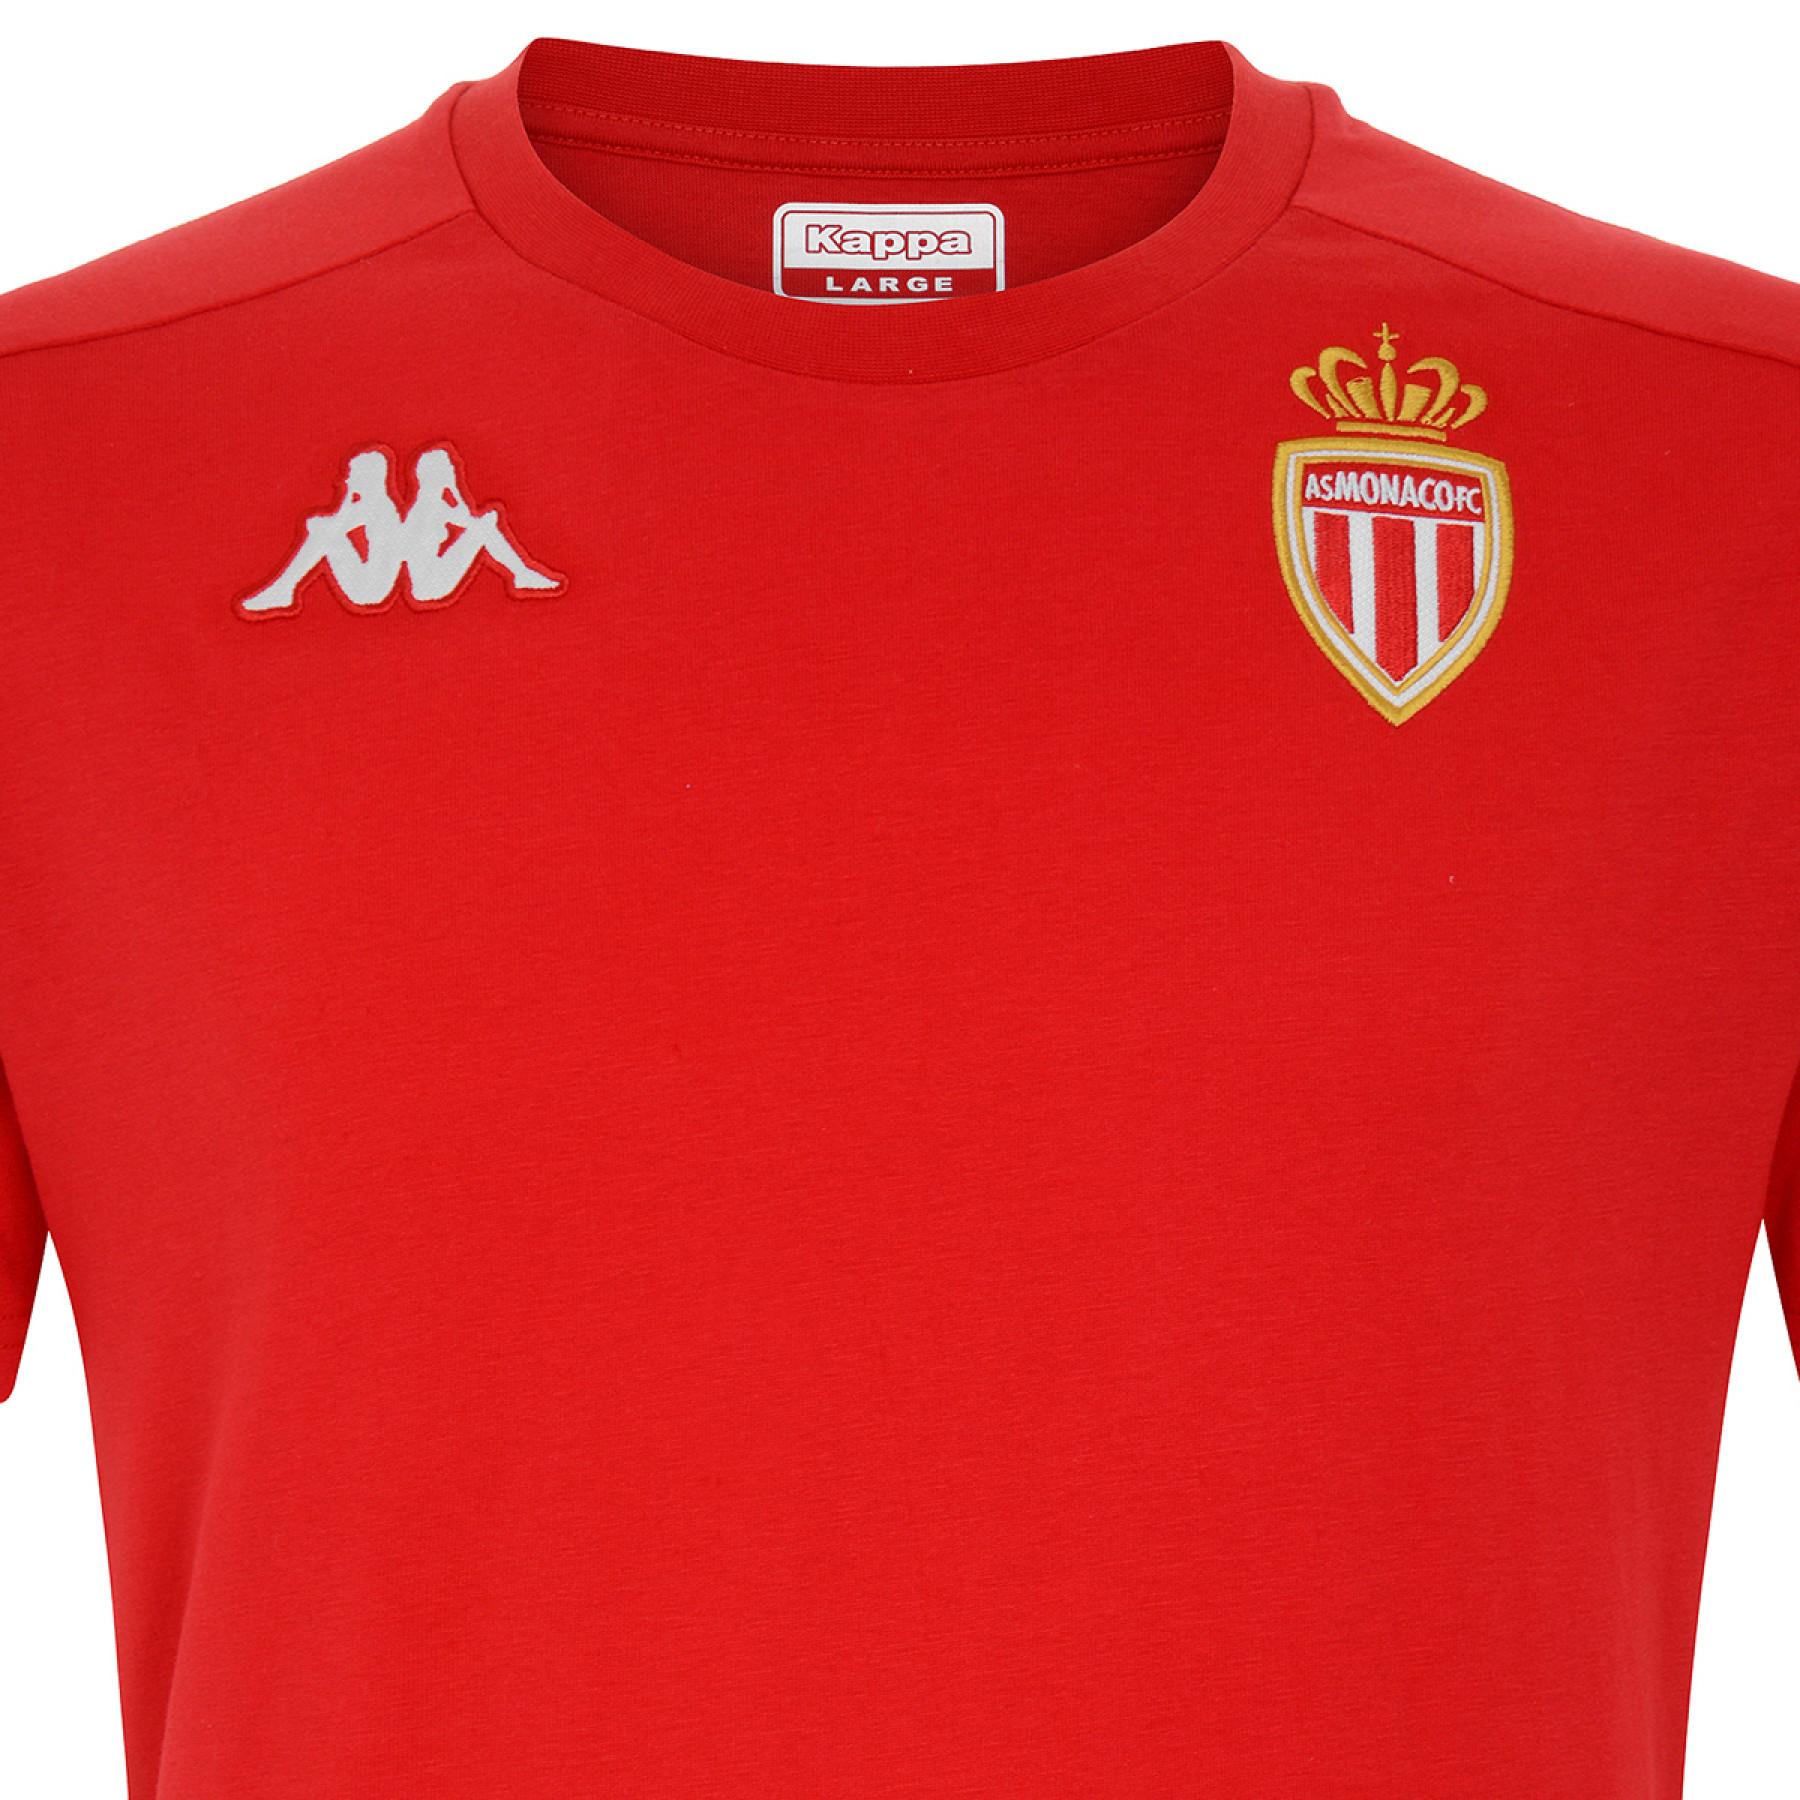 Camiseta niños AS Monaco 2020/21 ayba 4